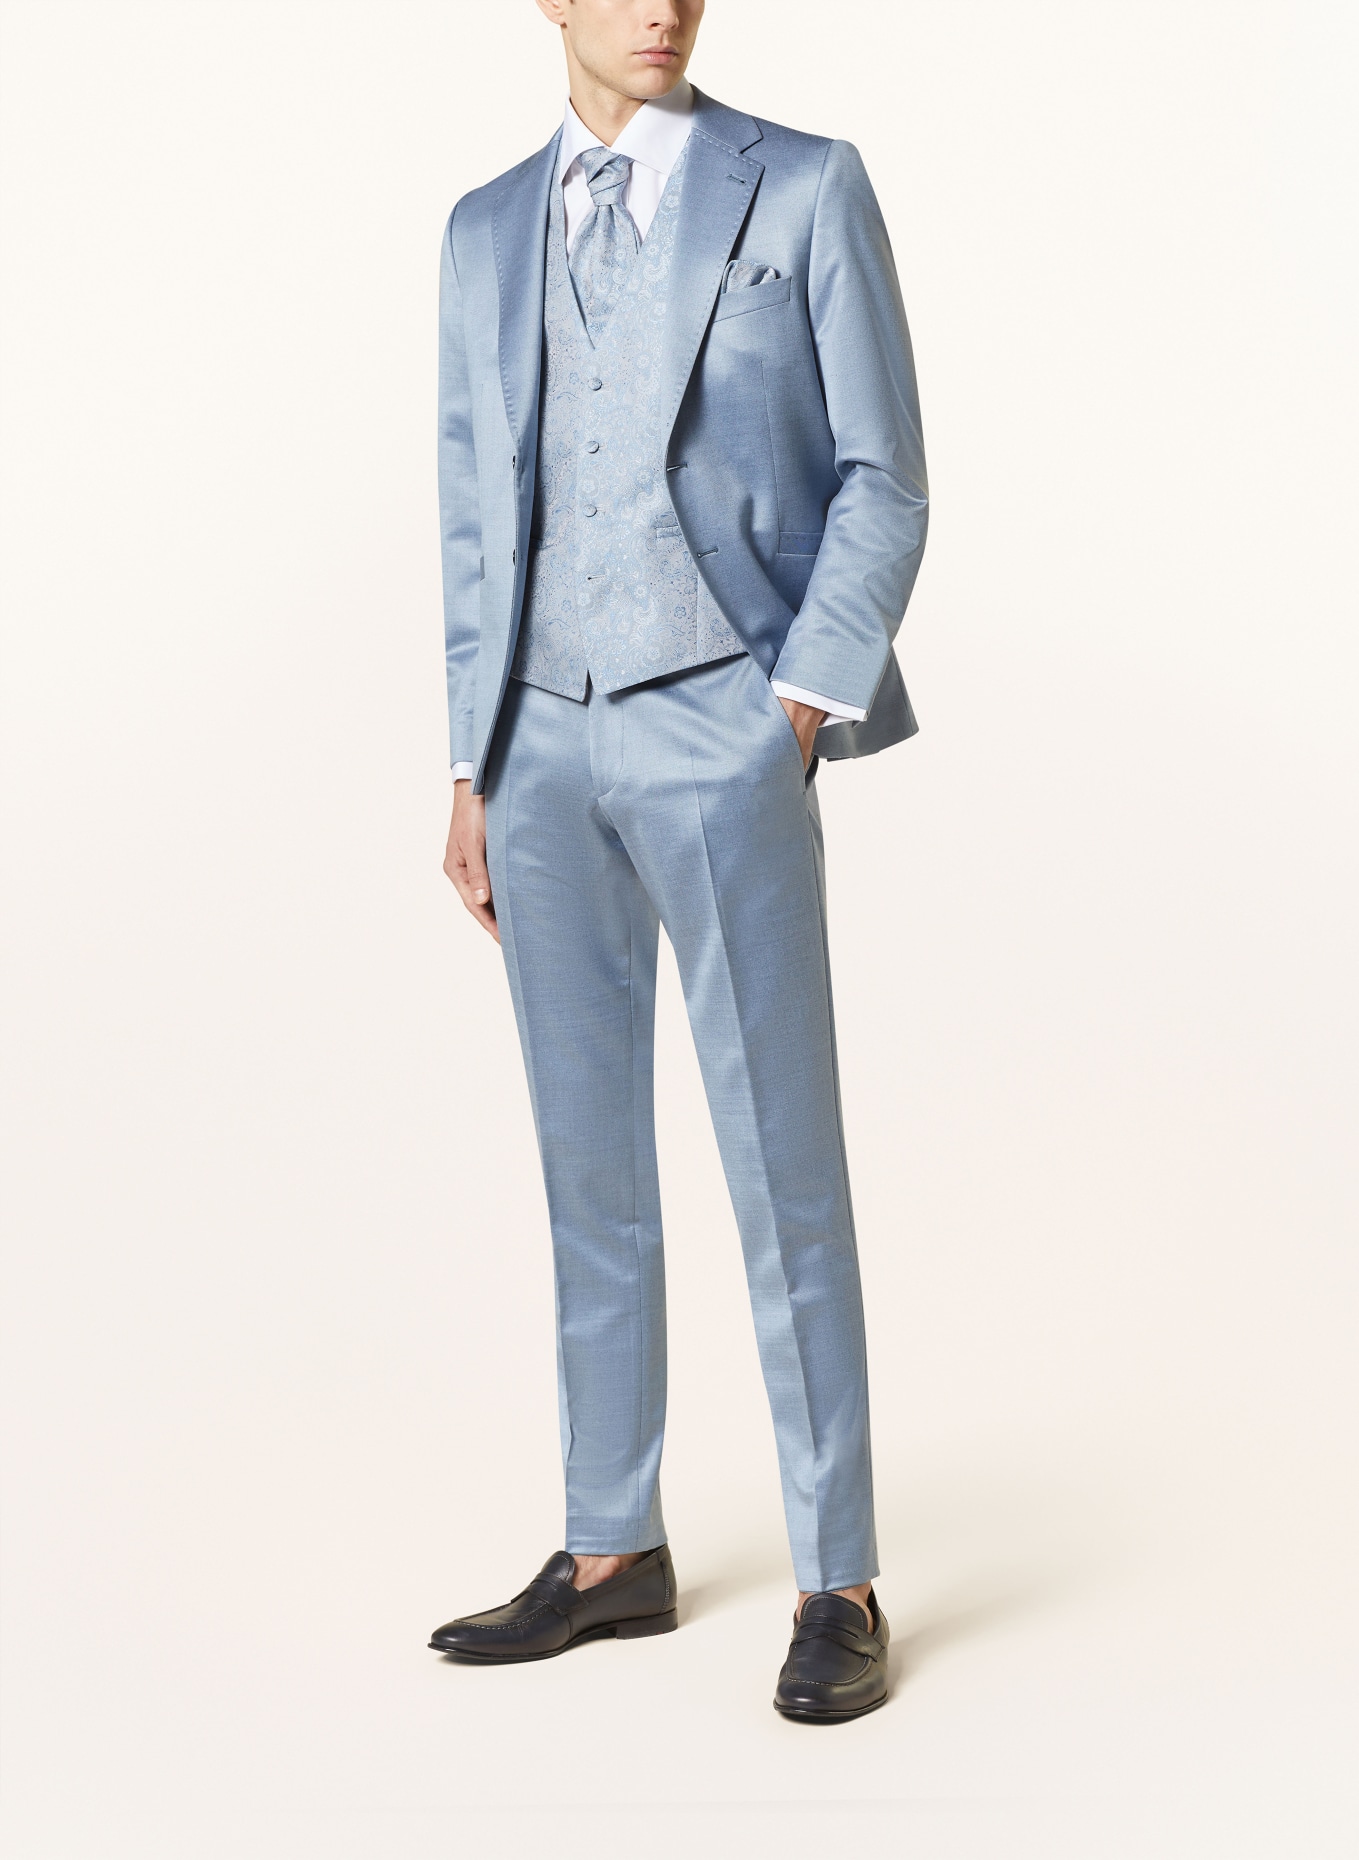 WILVORST Suit jacket extra slim fit, Color: LIGHT BLUE (Image 2)